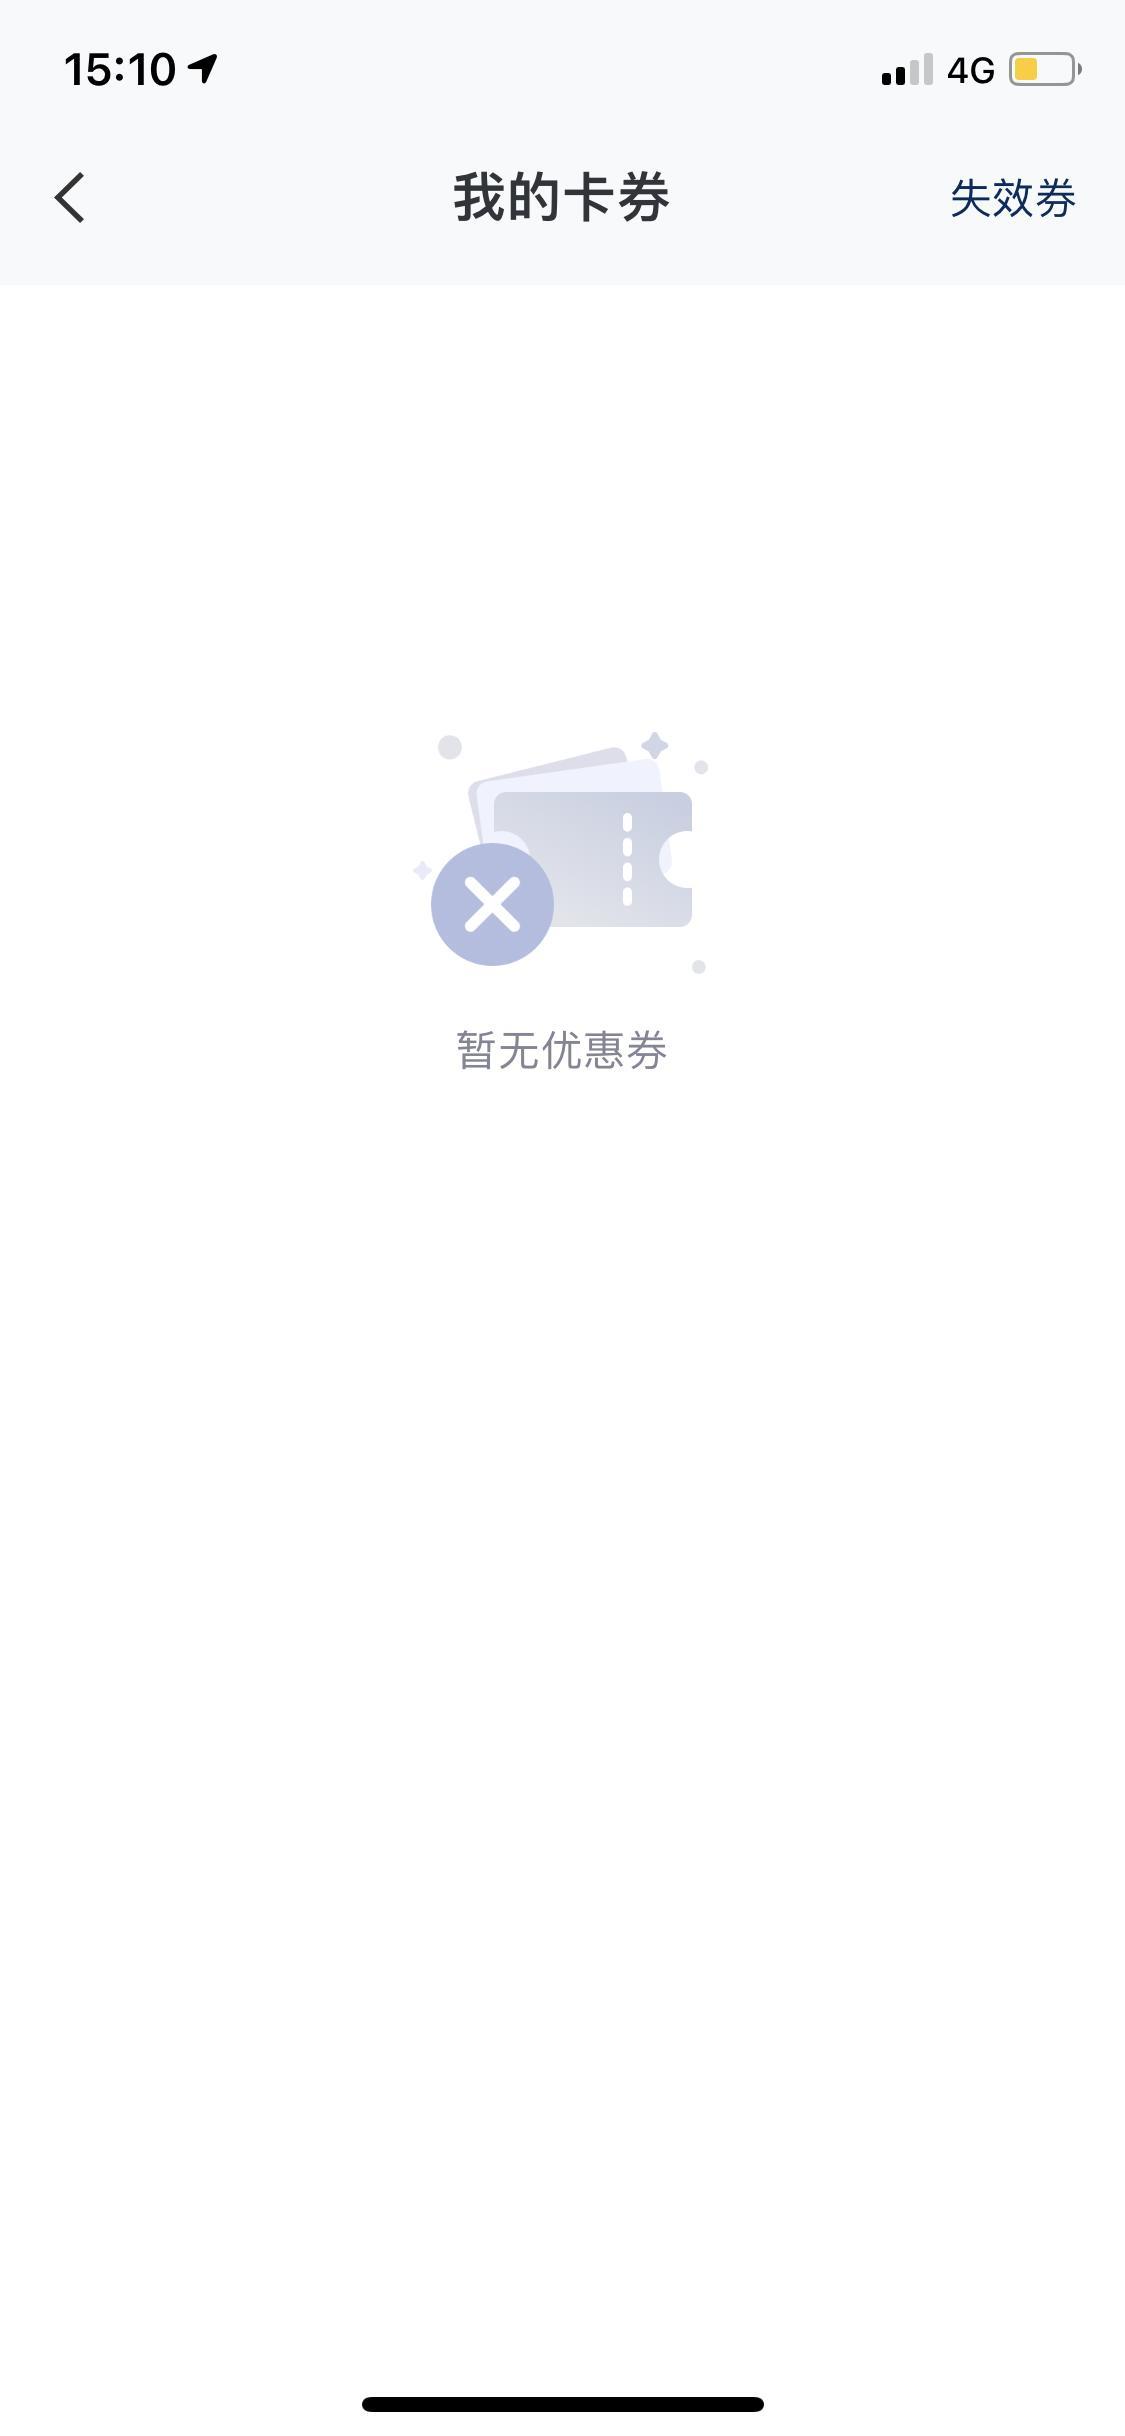 伊兰特 我下载了一个北京现代的app发票行驶证上传认证成功都几天了，为啥还是没收到app送的一年两次的抵用卷